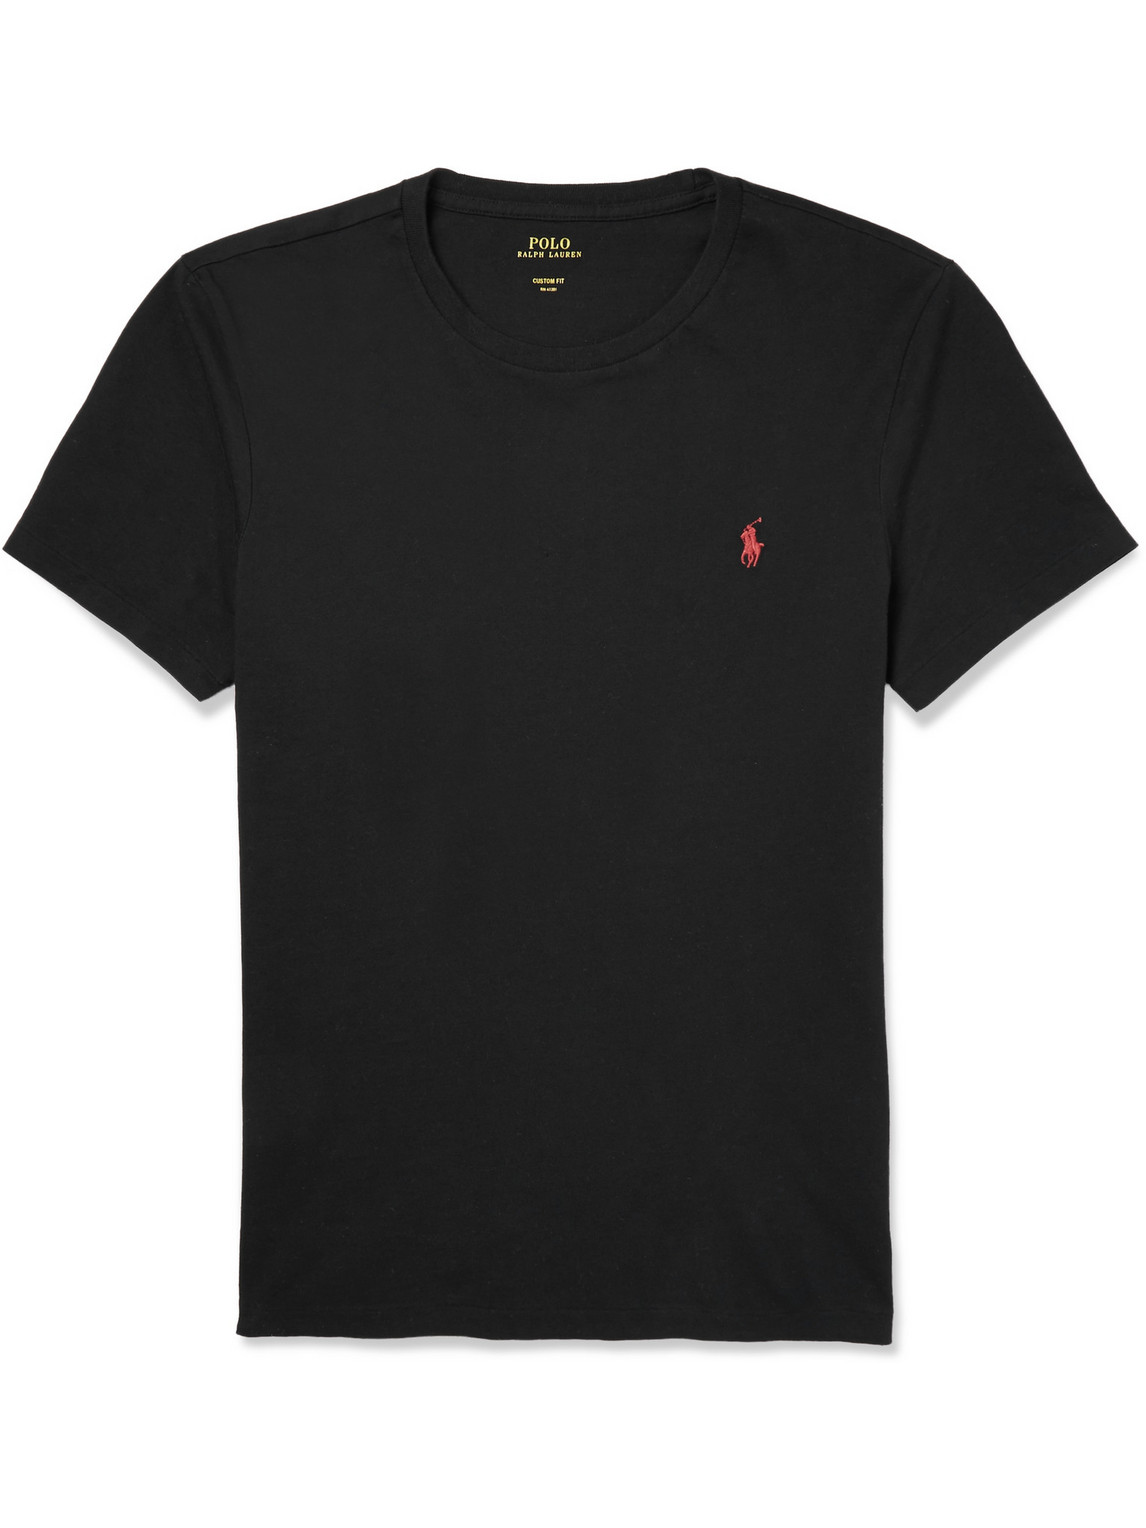 Polo Ralph Lauren - Slim-Fit Cotton T-Shirt - Men - Black - XXL pour hommes